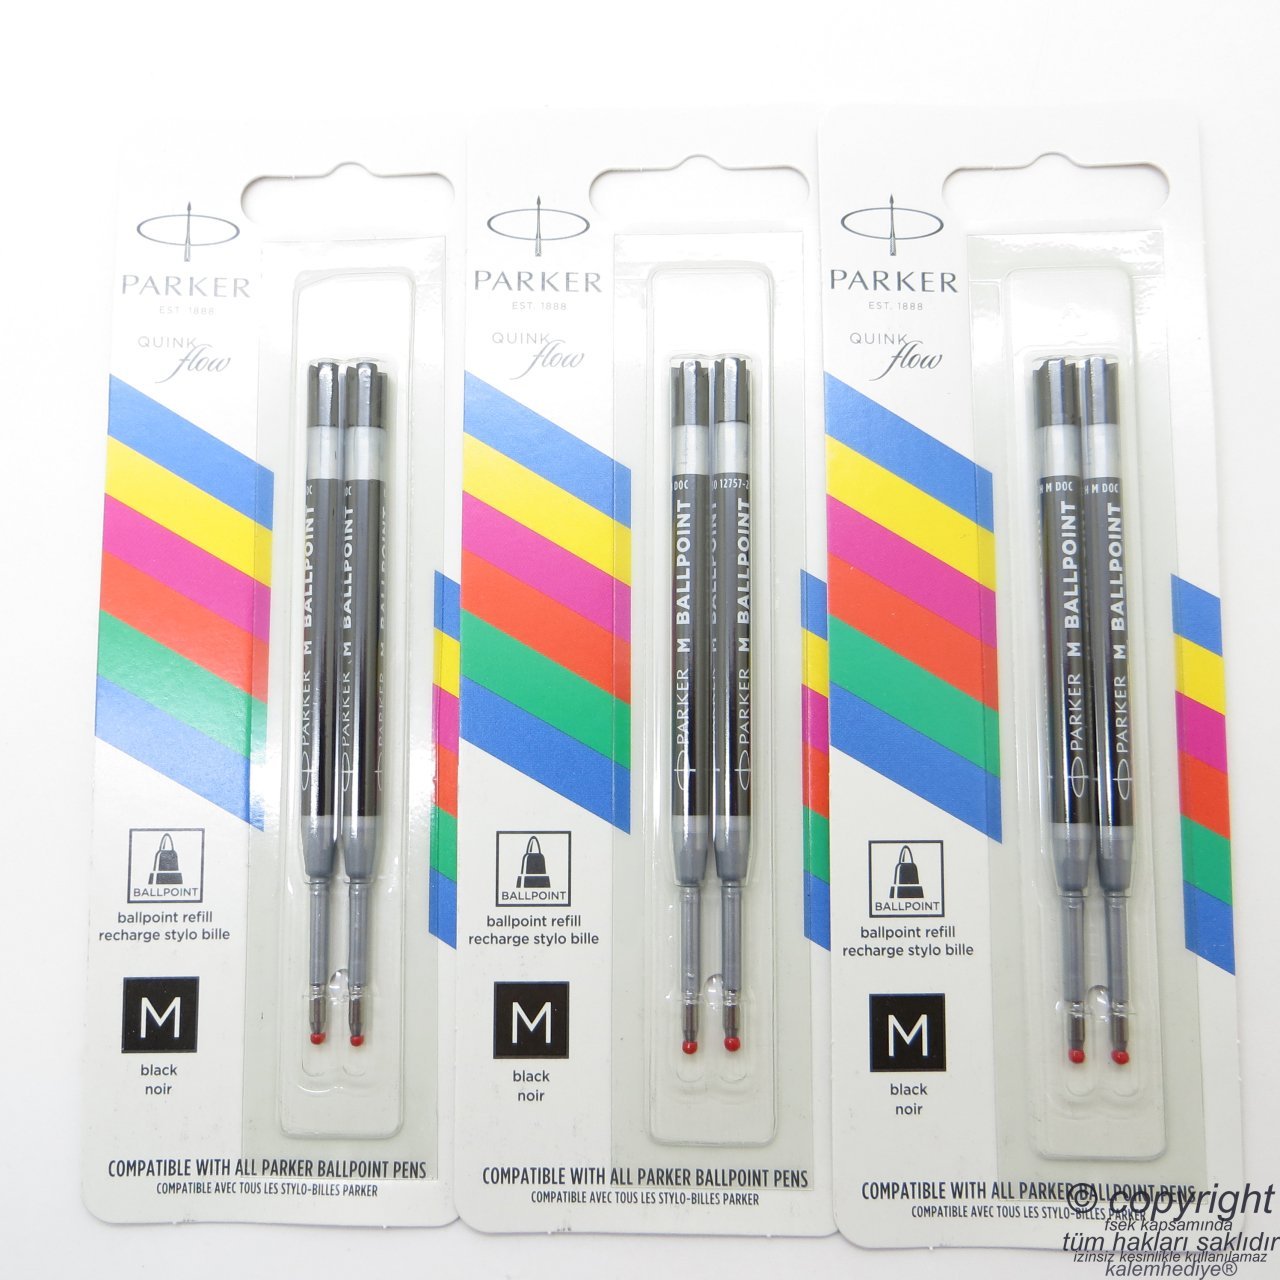 Parker Tükenmez Kalem Yedeği - Medium Siyah 2'li Blister Refil (Benzer ucu kullanan kalemlerle uyumludur)